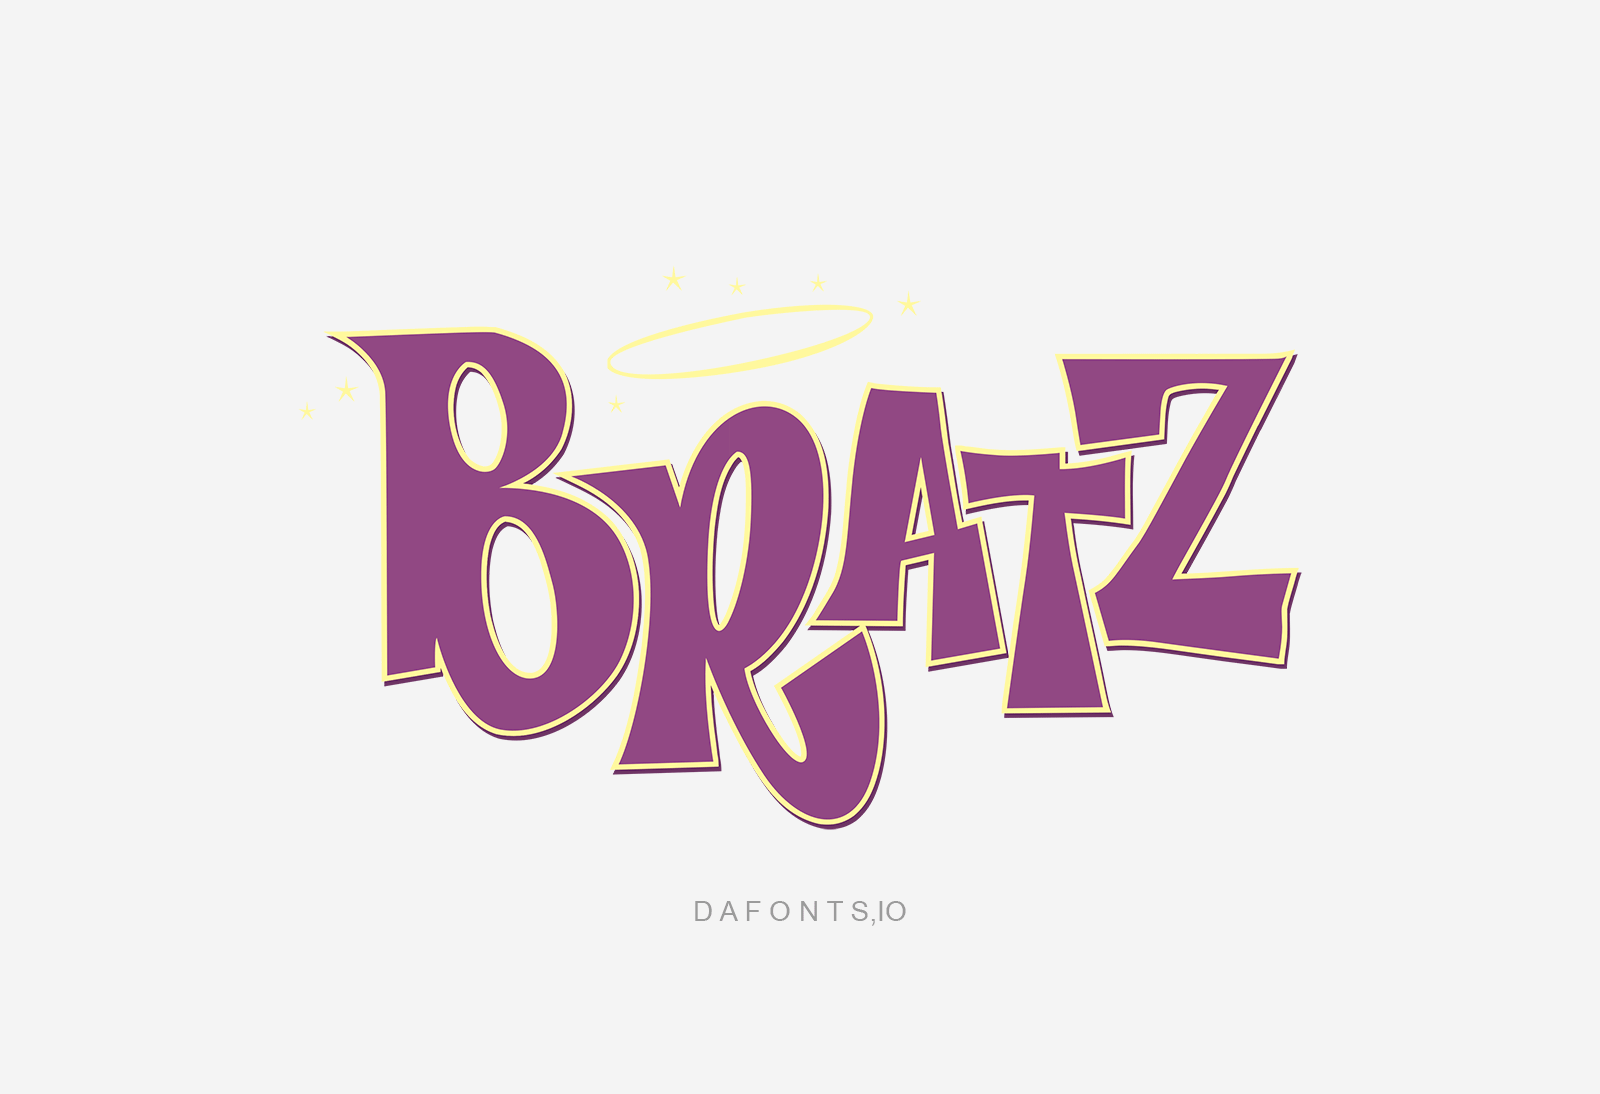 Bratz Font